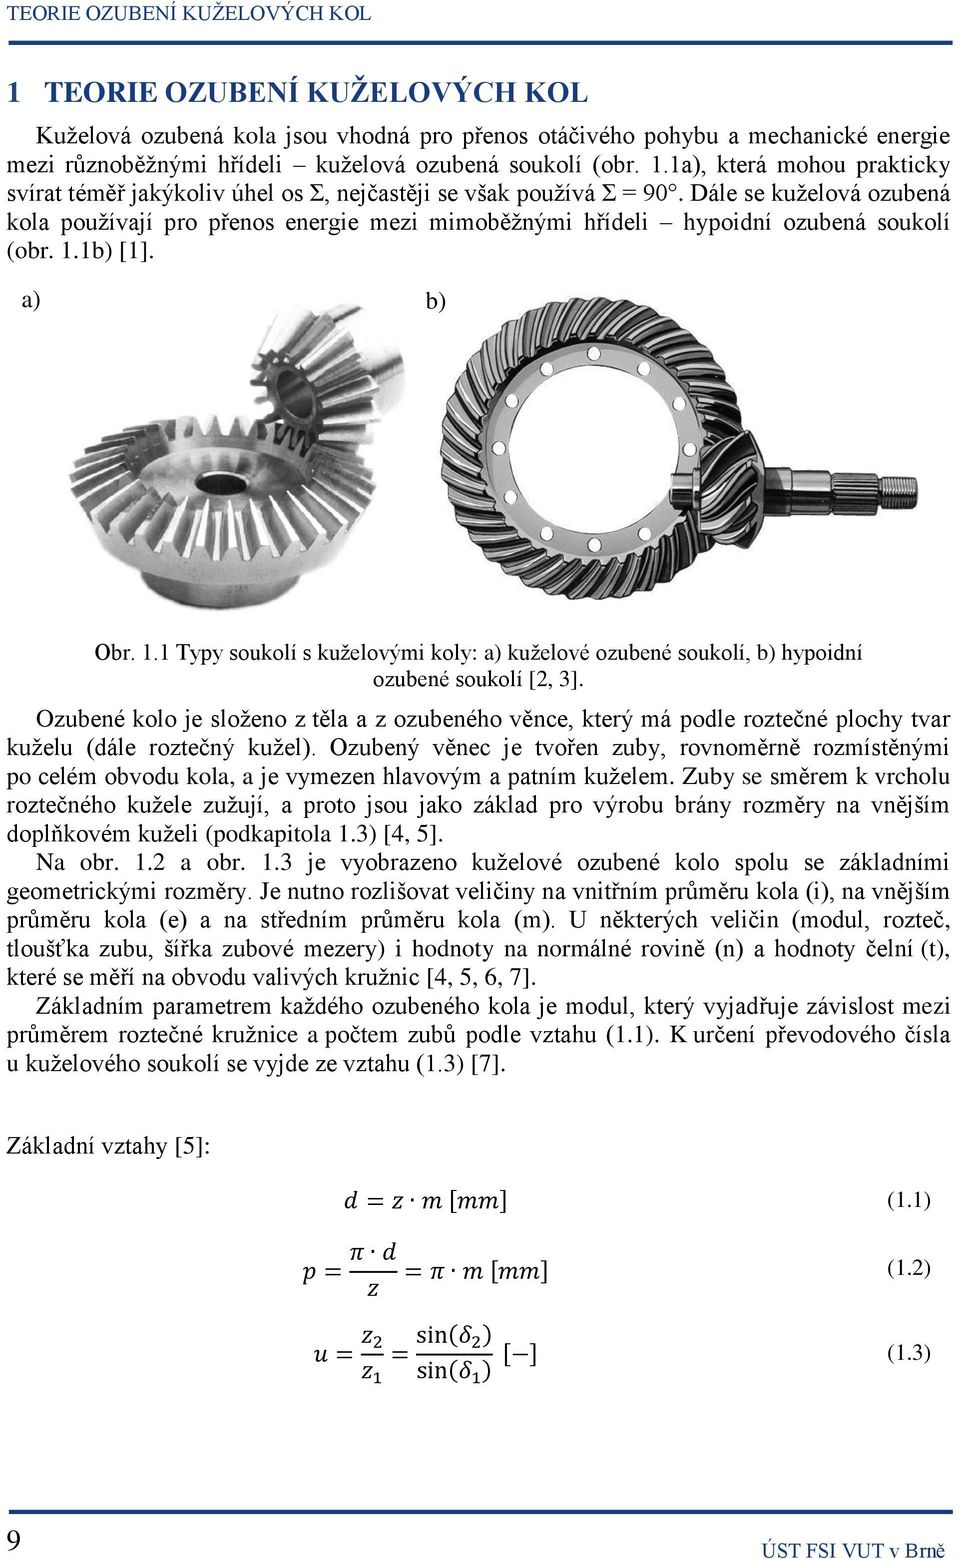 Dále se kuželová ozubená kola používají pro přenos energie mezi mimoběžnými hřídeli hypoidní ozubená soukolí (obr. 1.